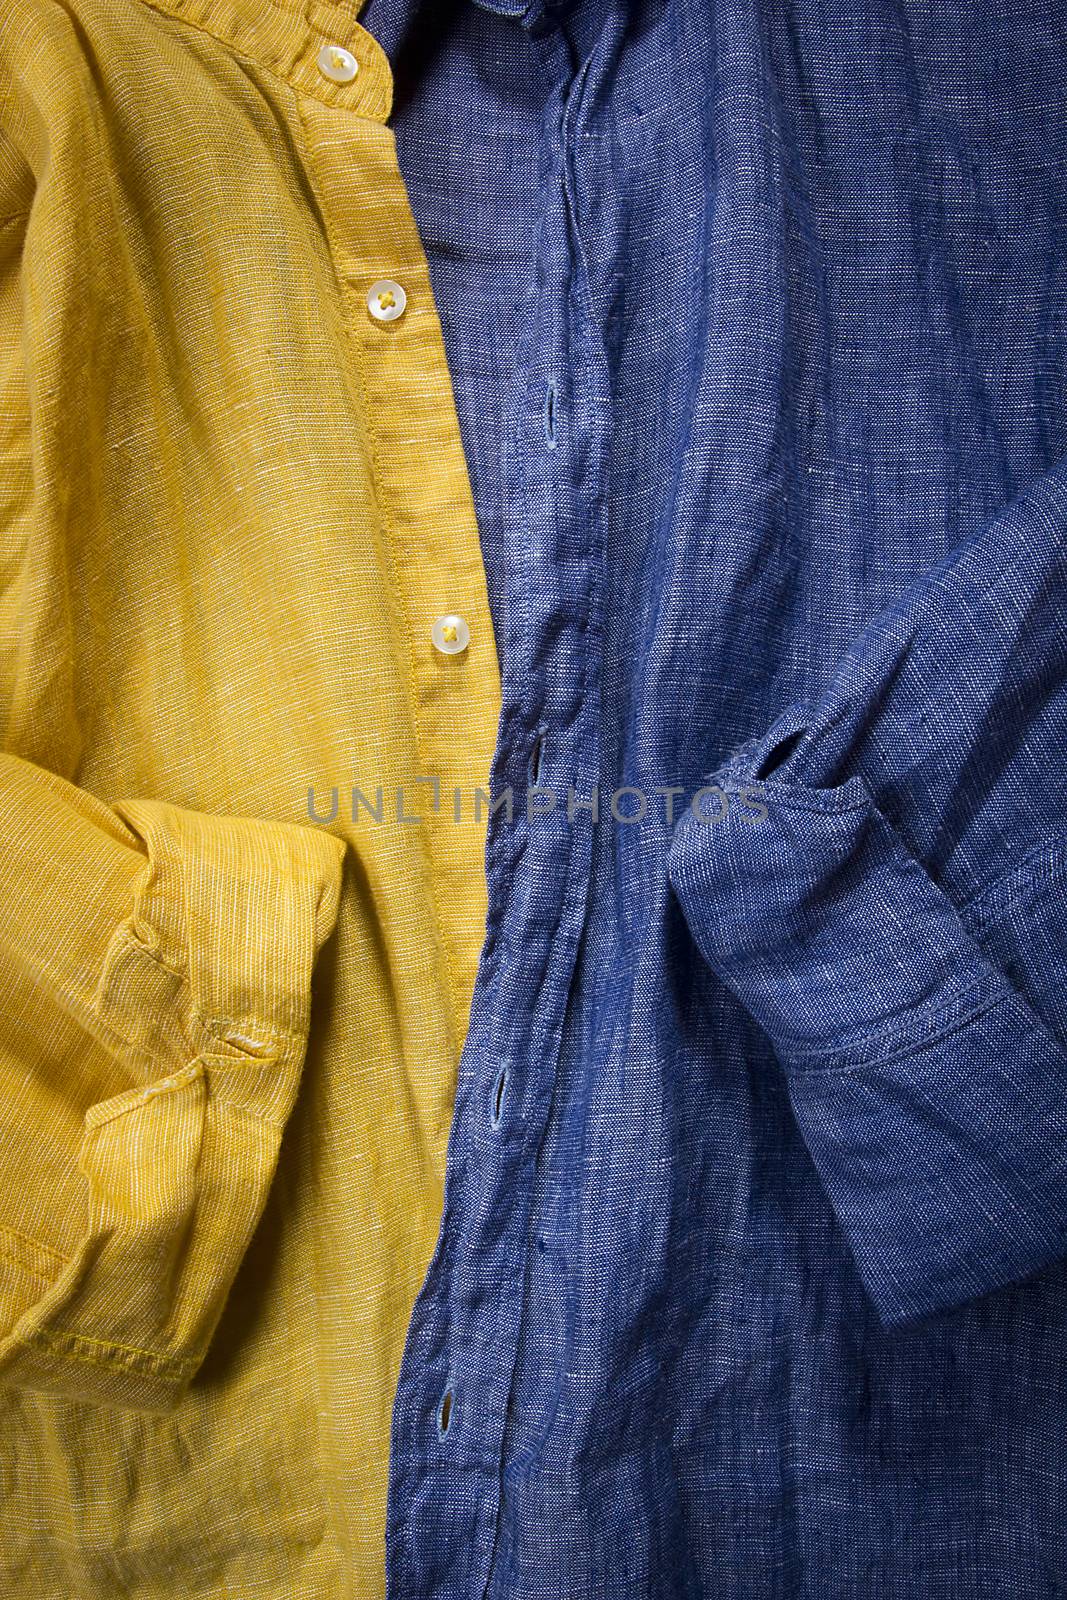 Cotton shirt close-up by VIPDesignUSA